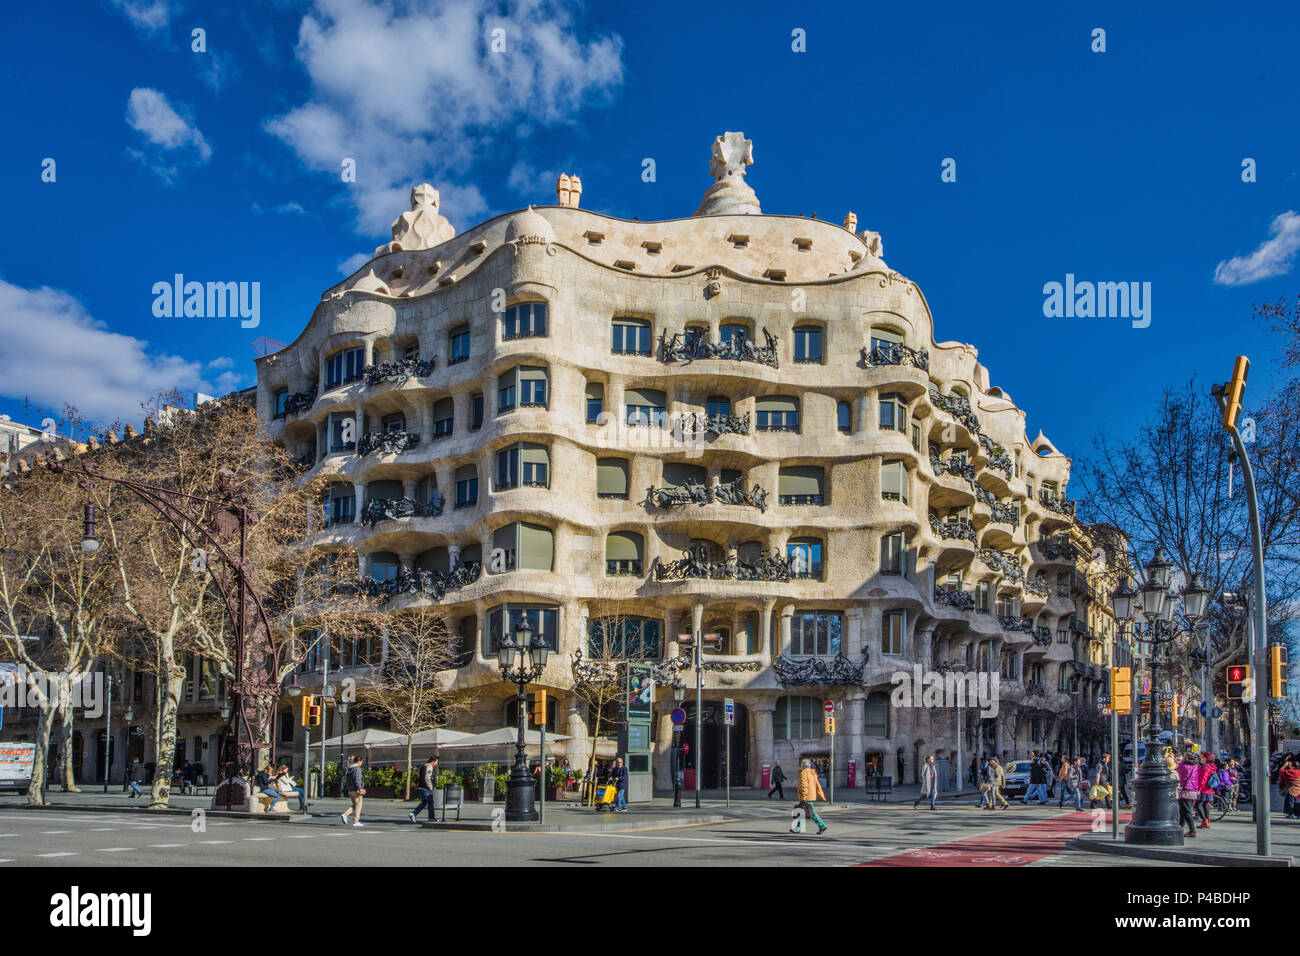 La ville de Barcelone, Gaudi, architecte maison Mila (La Pedrera), Espagne Banque D'Images